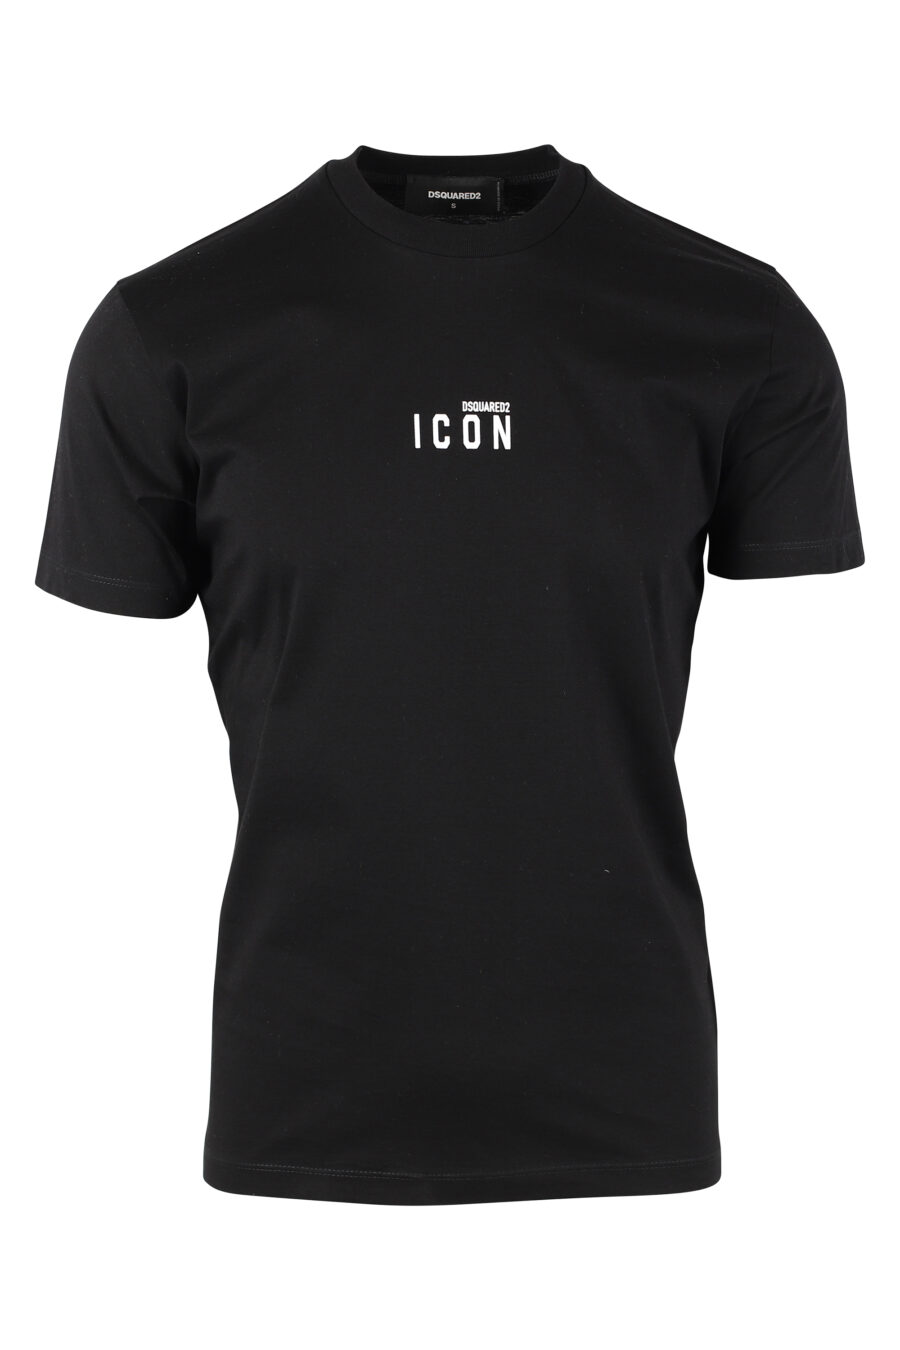 T-shirt preta com "ícone" minilogue - IMG 9766